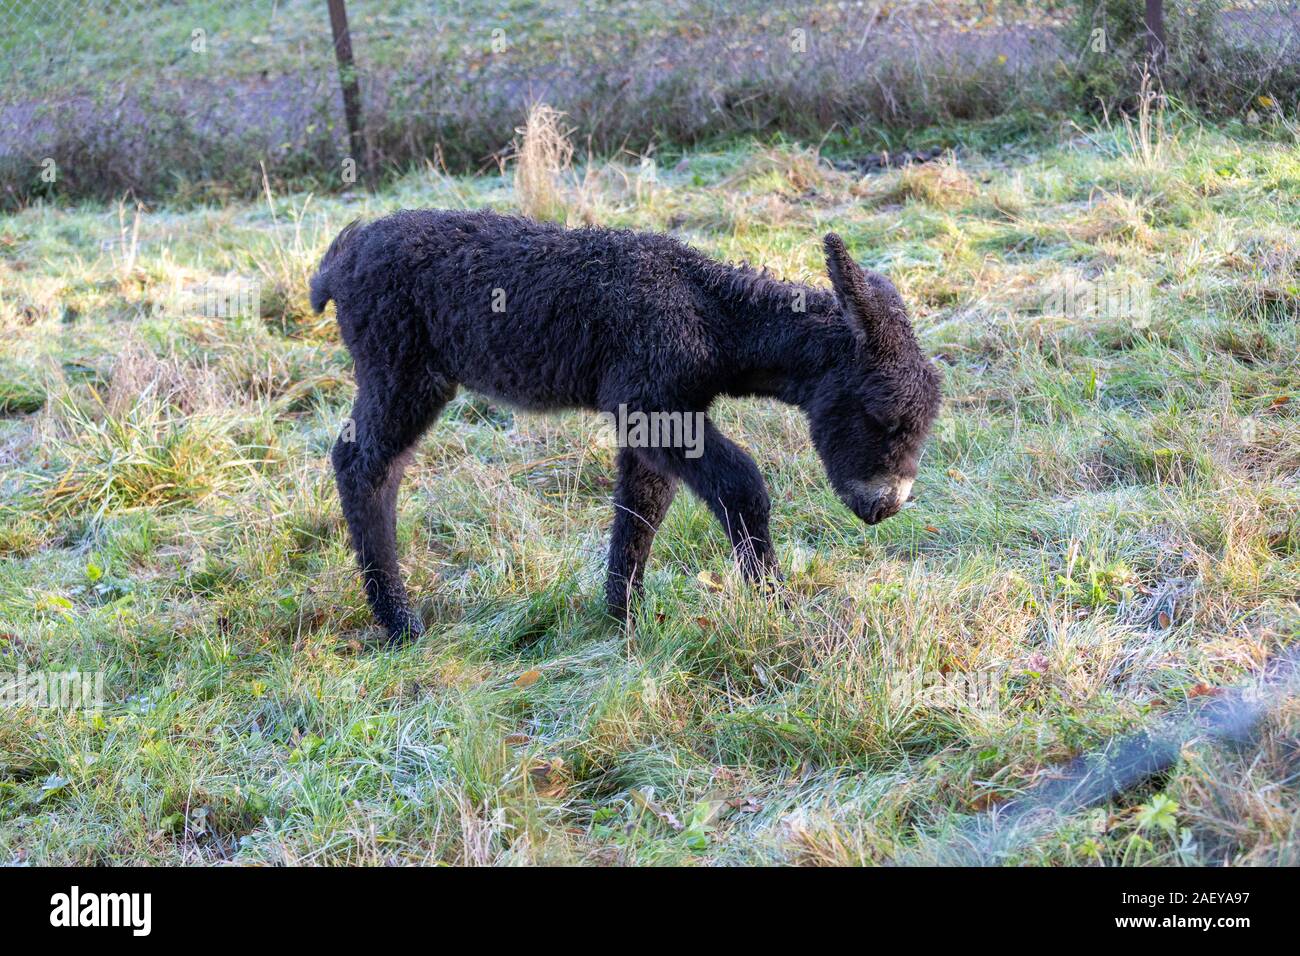 Rare Poitou donkey foal Stock Photo